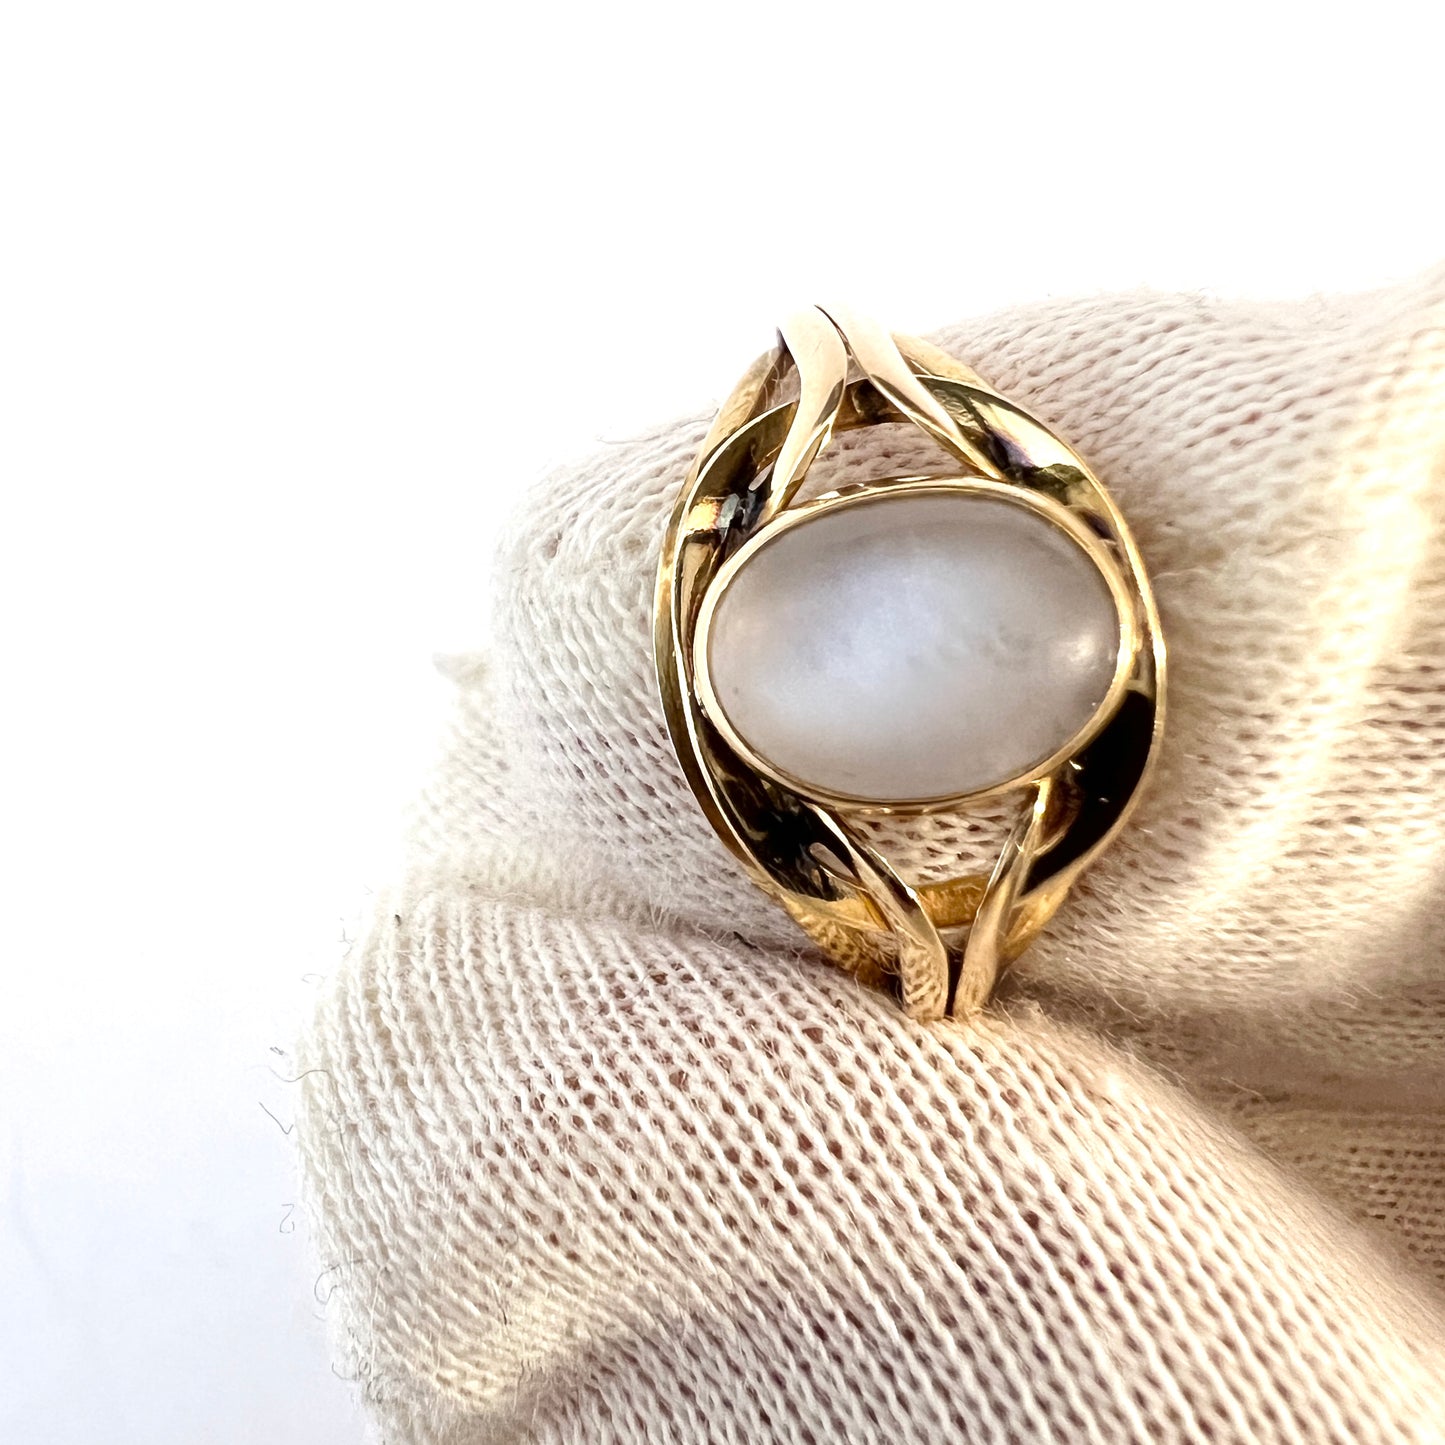 Guldvaruhuset, Sweden year 1960. Vintage 18k Gold Moonstone Ring.